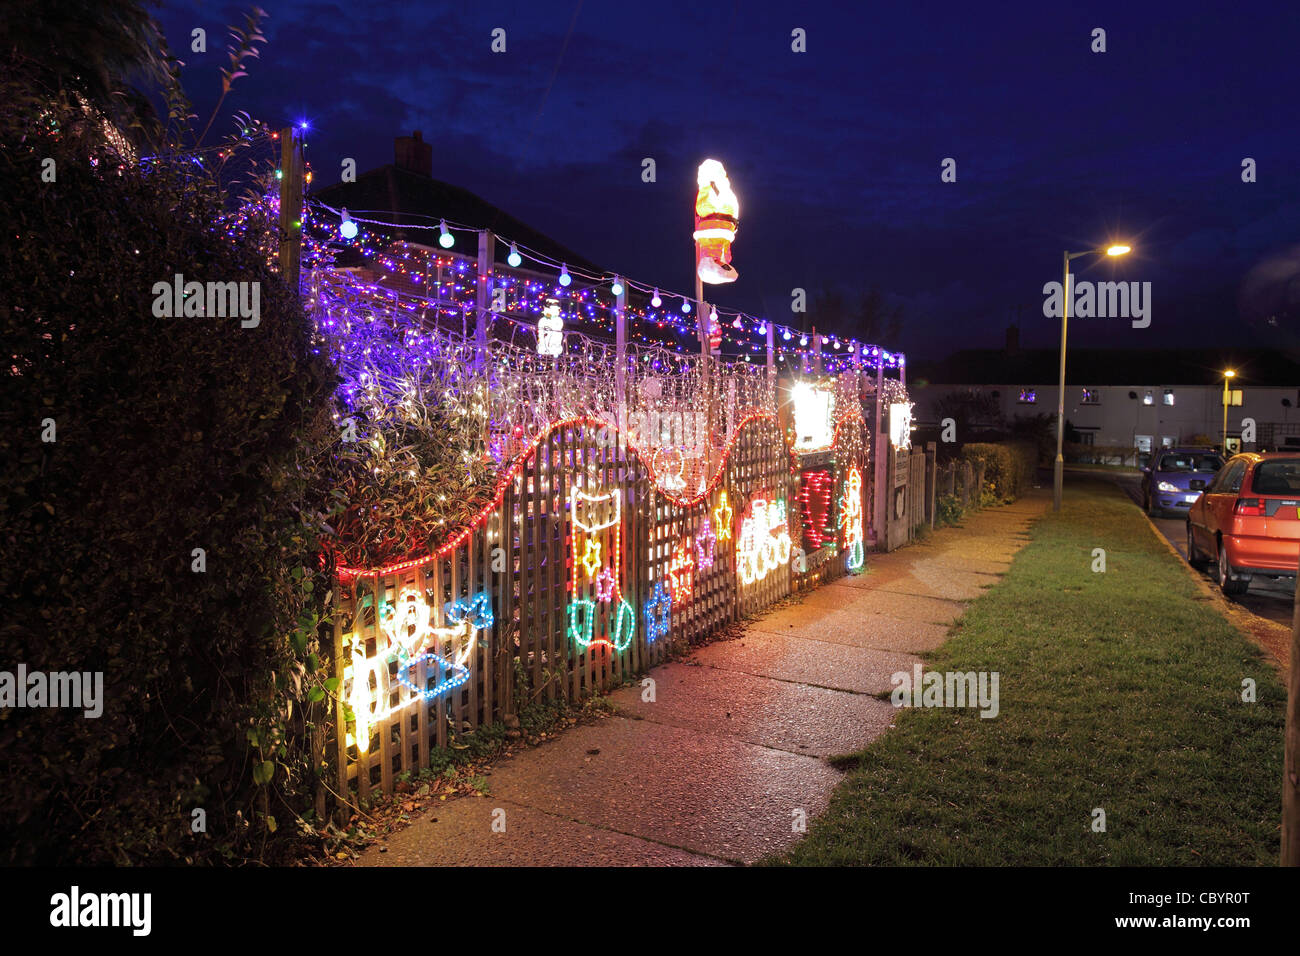 illuminated Christmas decorations, UK House at night, Saxmundham, Suffolk Stock Photo